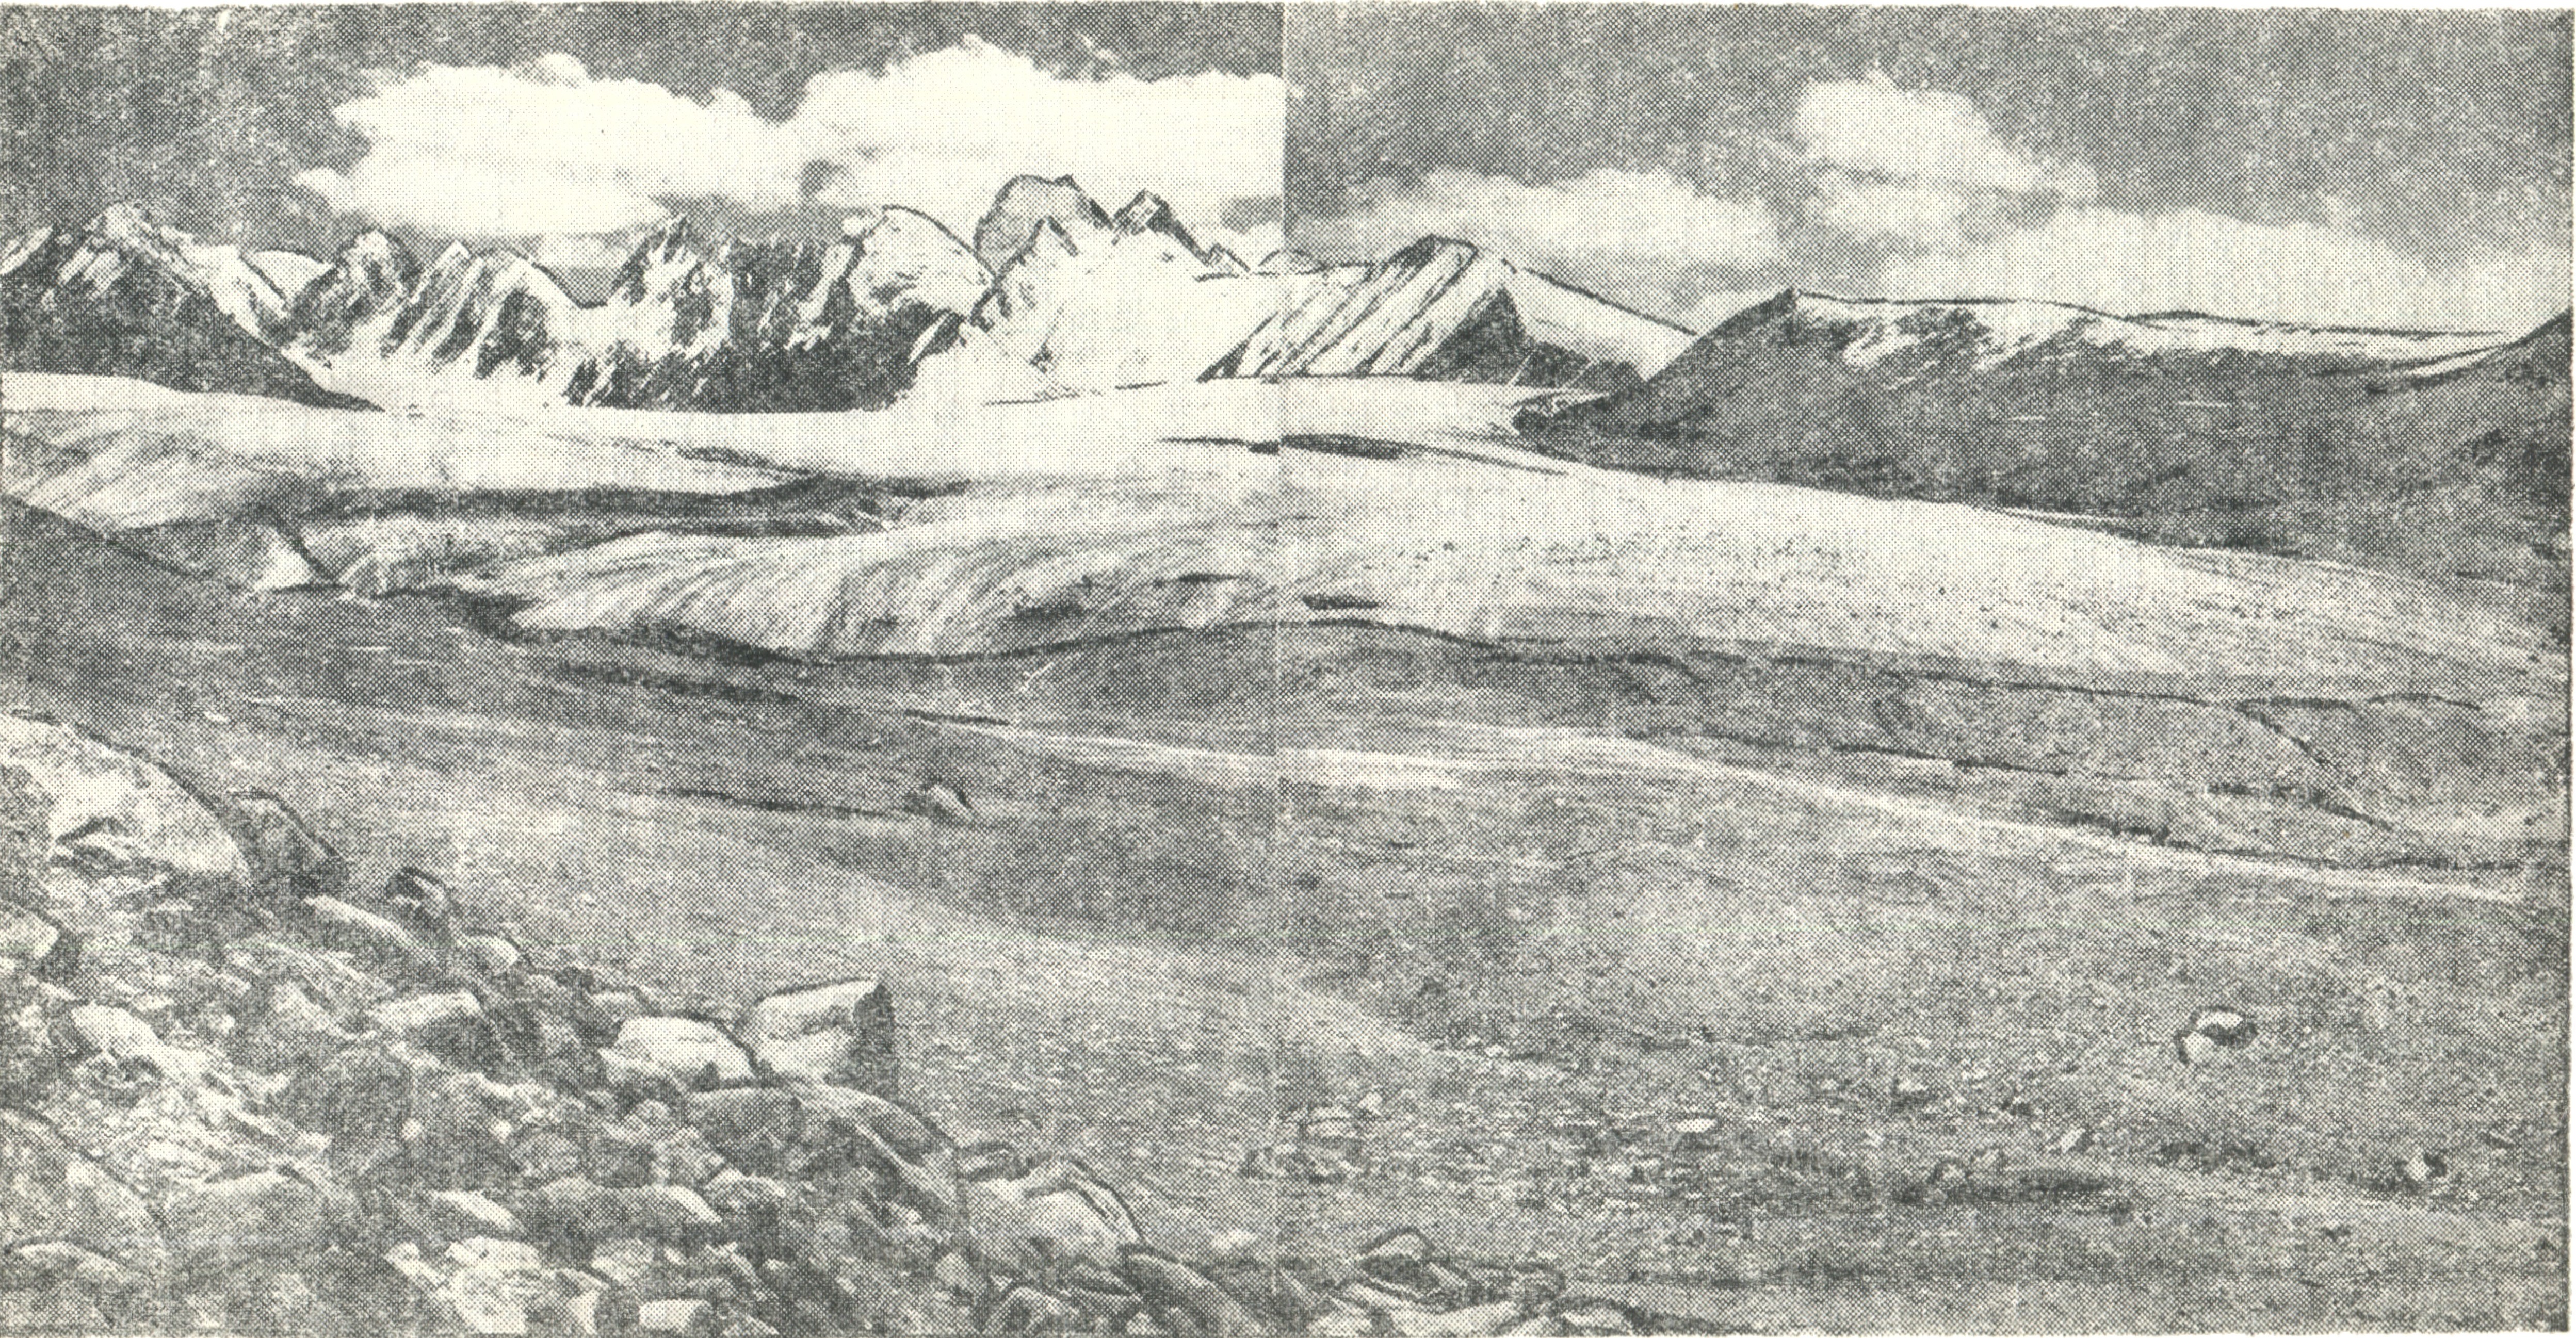 Ледник Комарова. Вид с правого борта долины. 1956 г. Фото из книги Фототеодолитная съемка ледников Тянь-Шаня